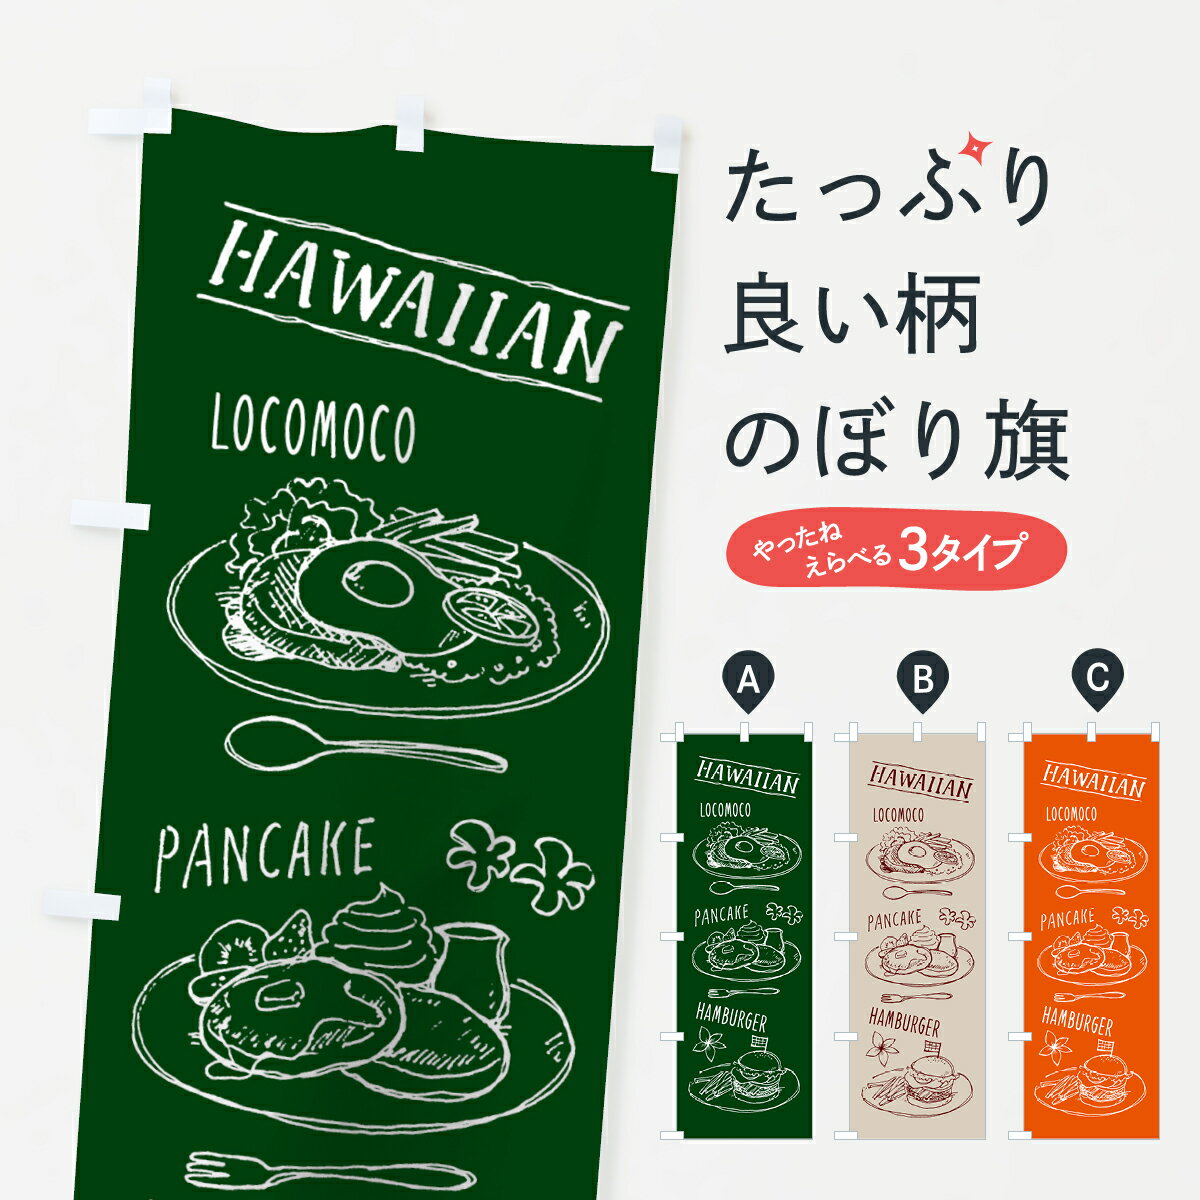 【3980送料無料】 のぼり旗 ハワイアンカフェのぼり ロコモコ パンケーキ ハンバーグ ハワイ料理